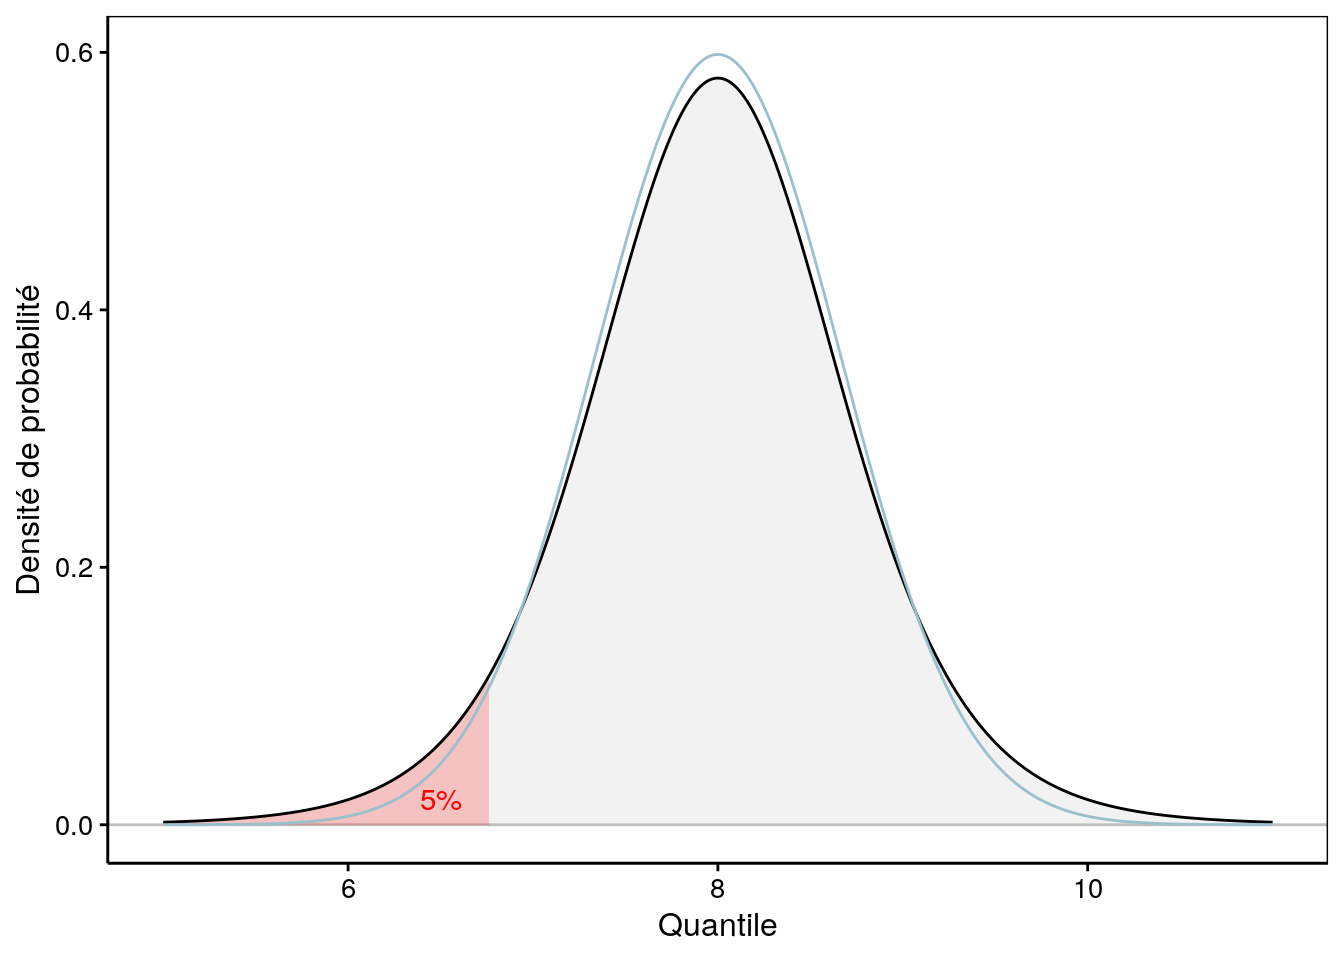 Une distribution de Student avec aire à gauche de 5% mise en évidence en rouge. La distribution Normale équivalente est superposée en bleu clair.